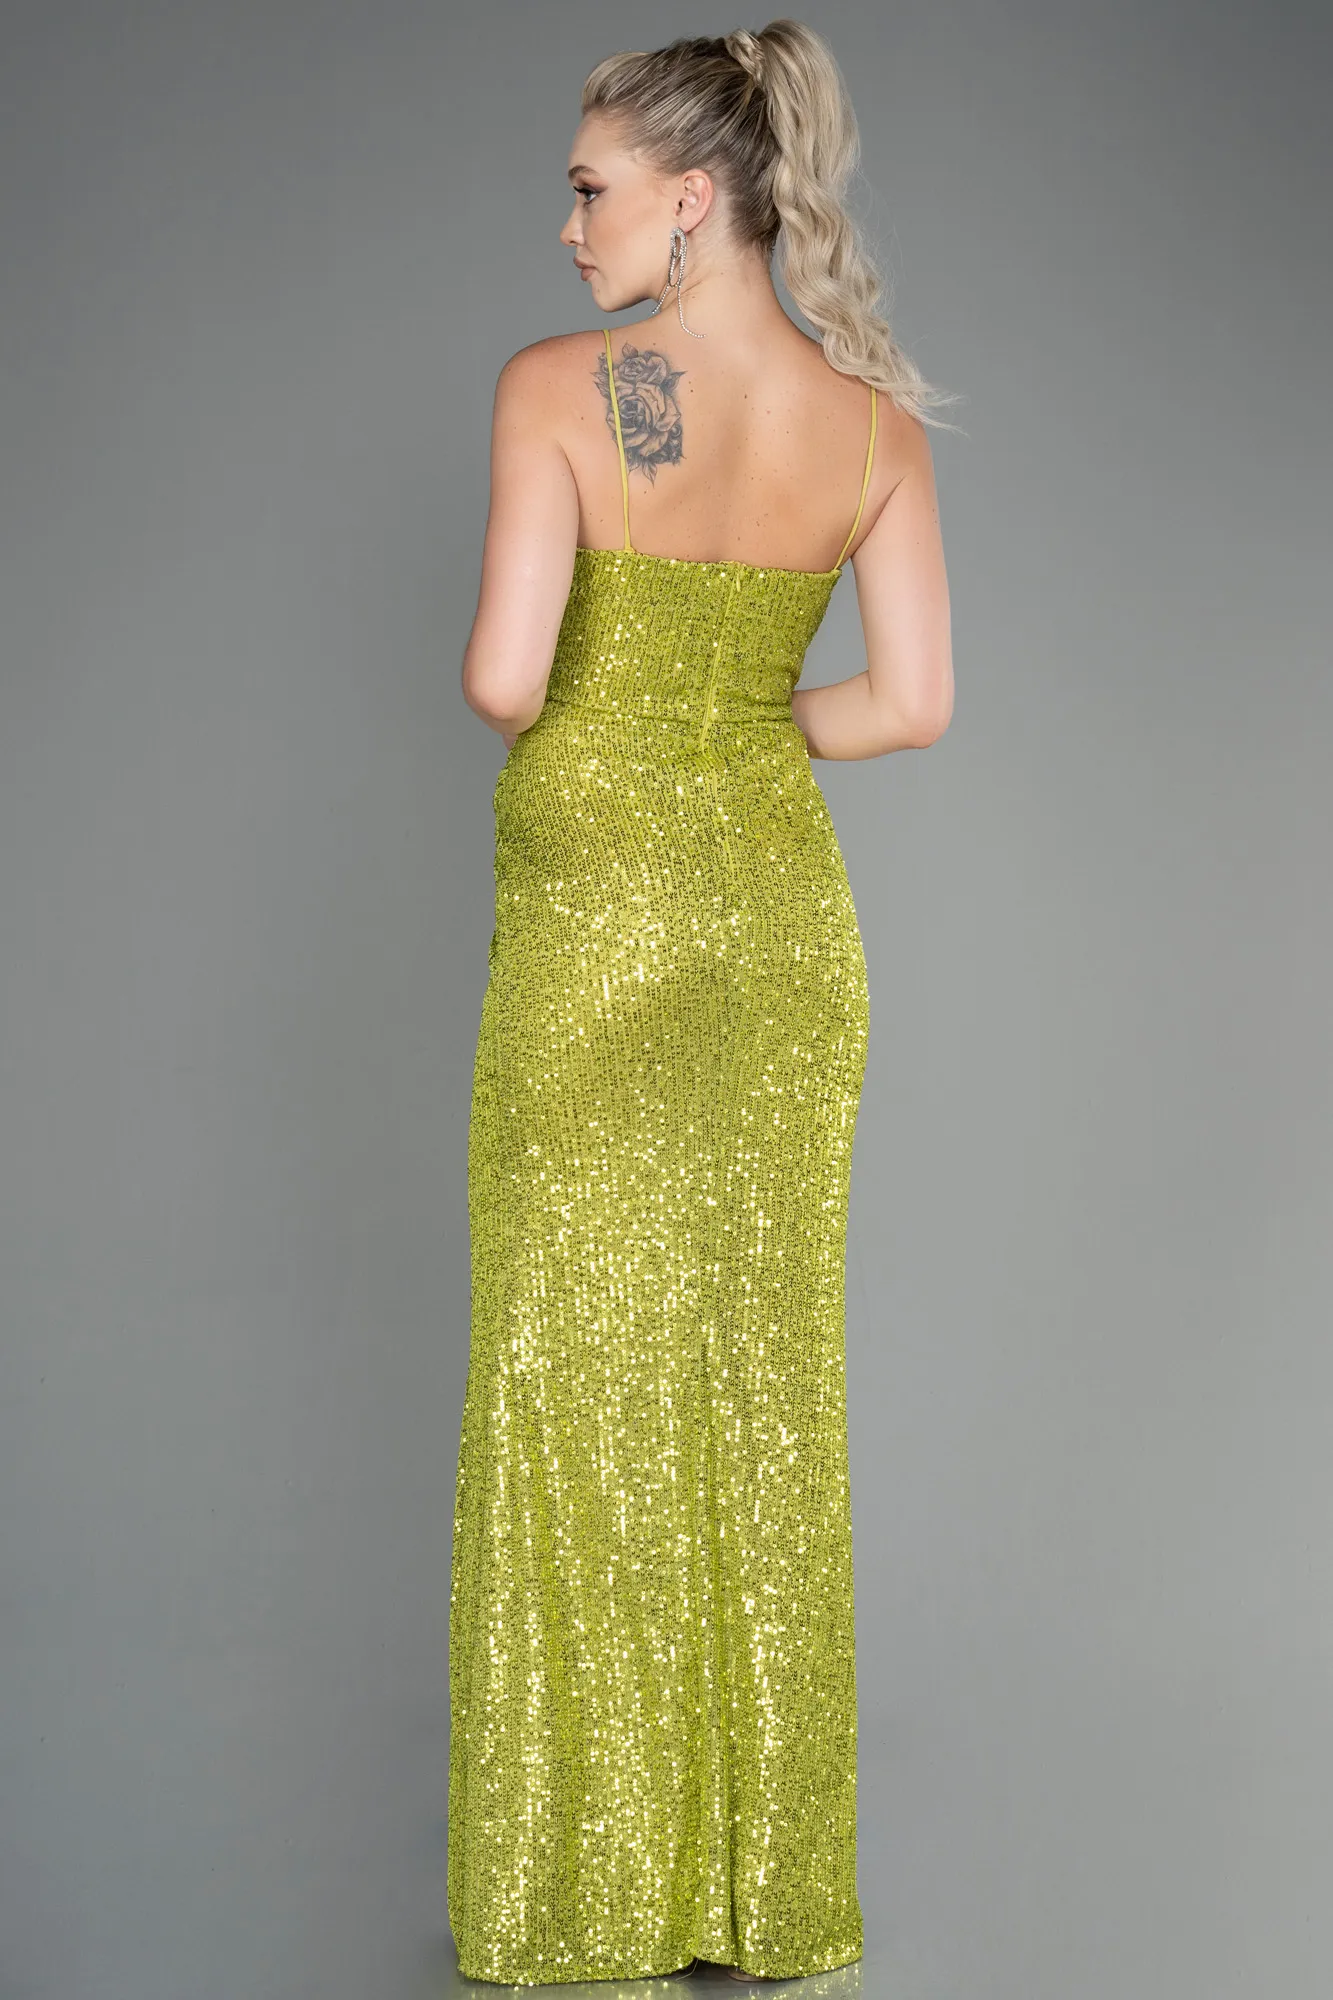 Pistachio Green-Long Scaly Evening Dress ABU3246